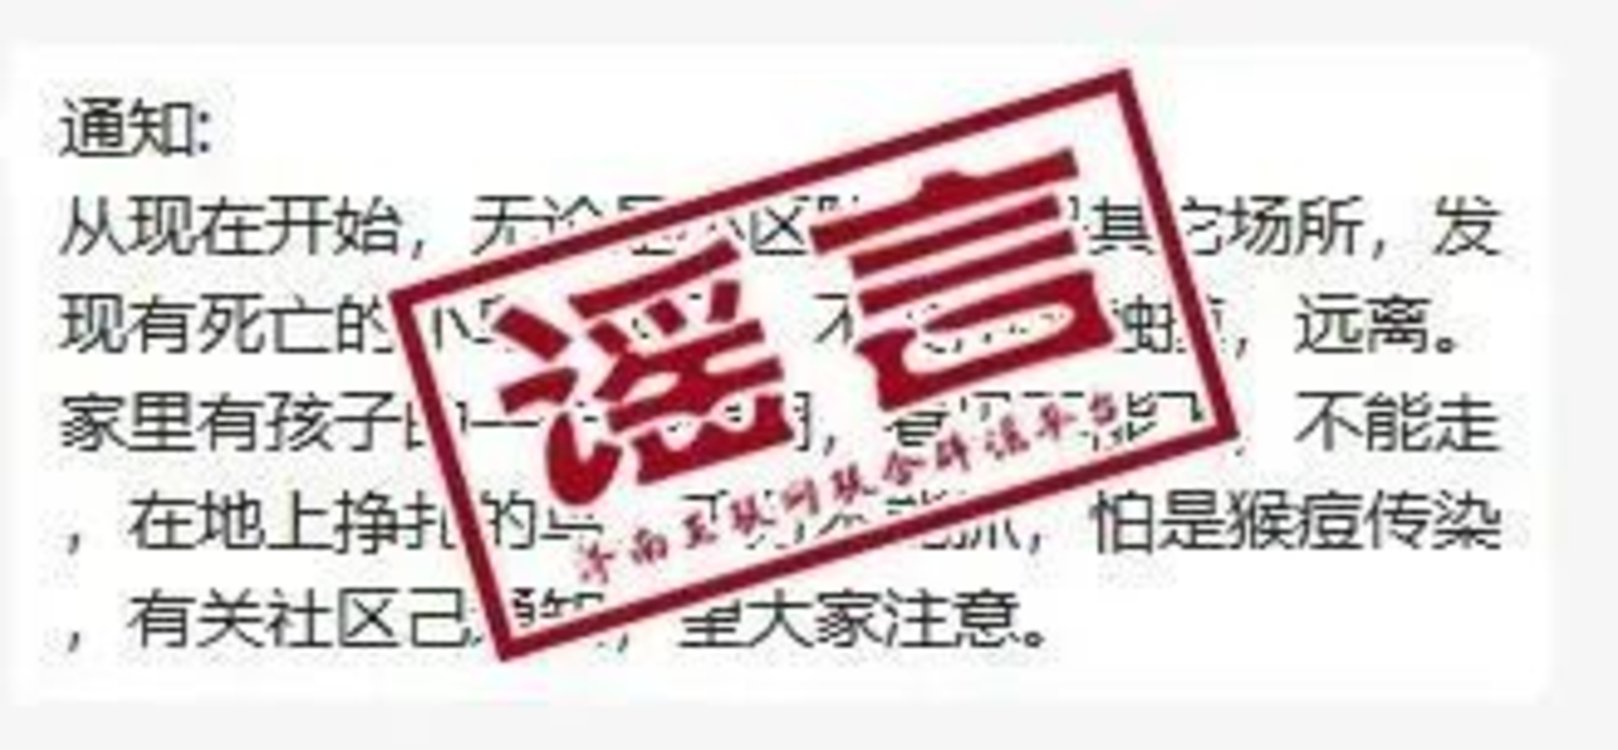 贵州省疾控：从未发布“远离死亡小鸟，警惕猴痘传染”的消息